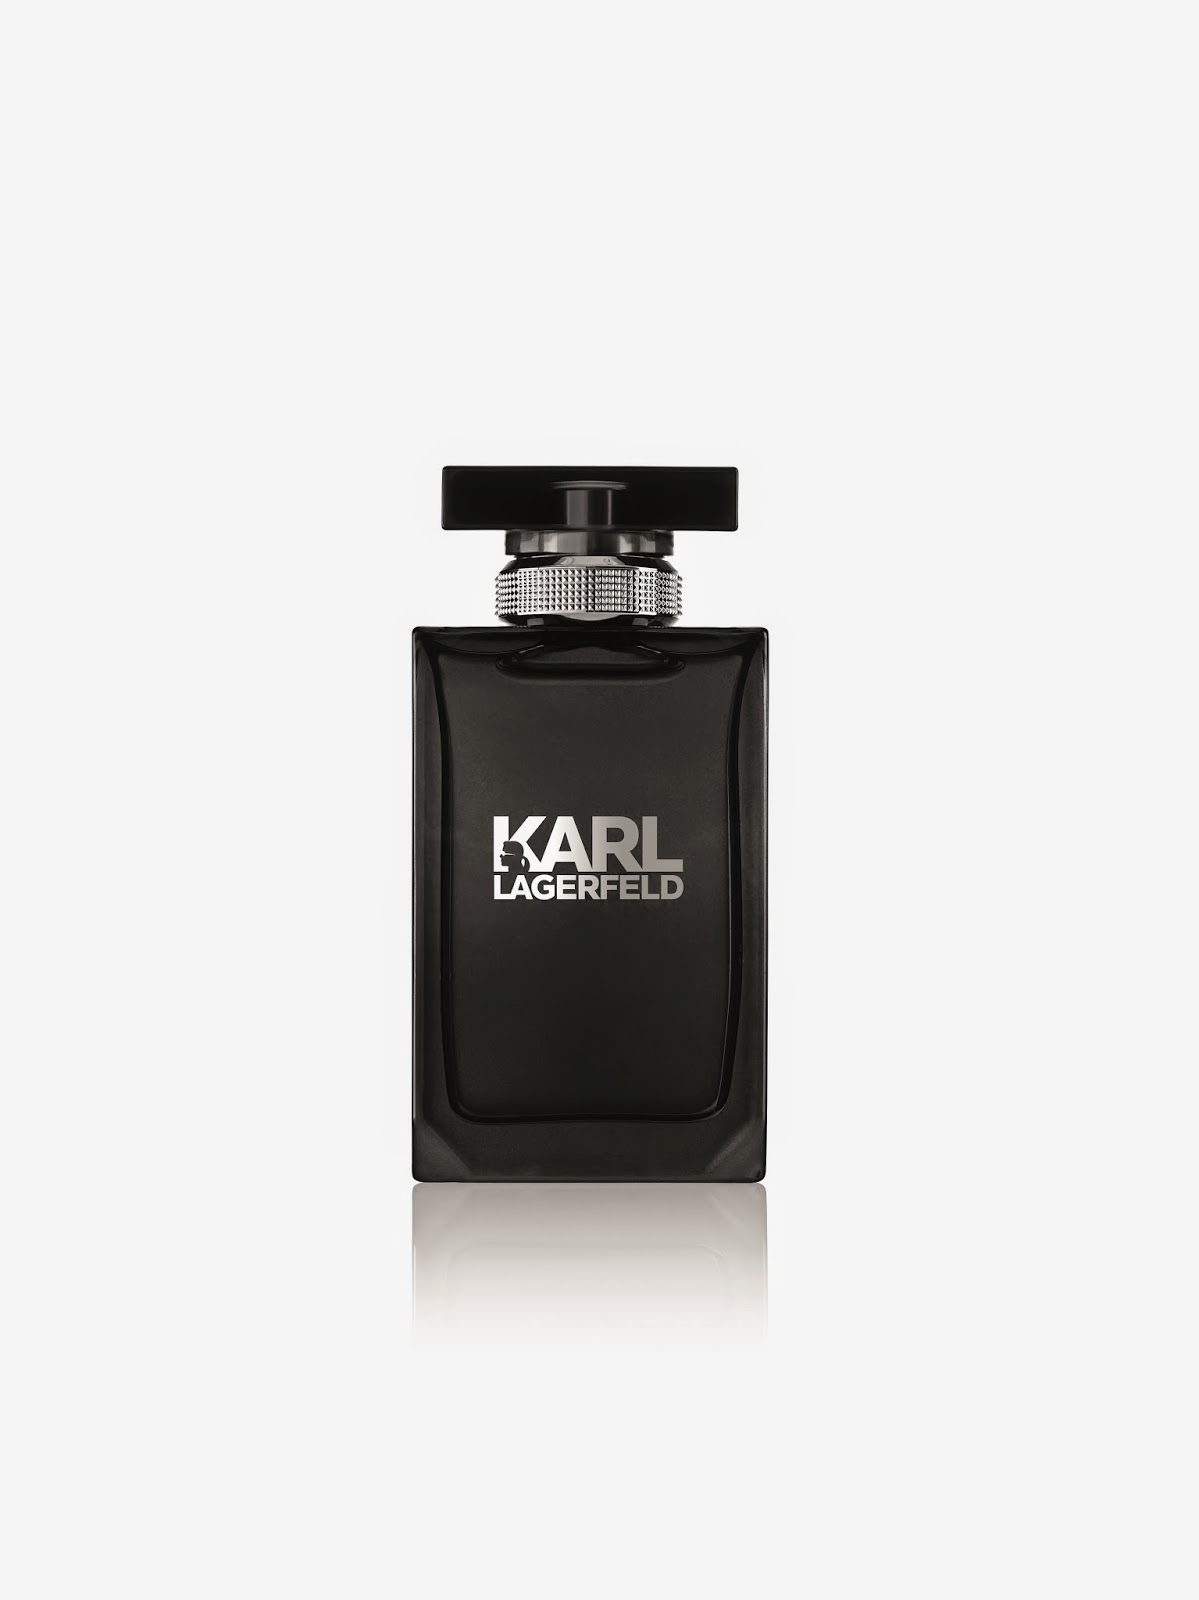 Карлов парфюм мужской. Karl Lagerfeld man EDT 100 ml Tester.